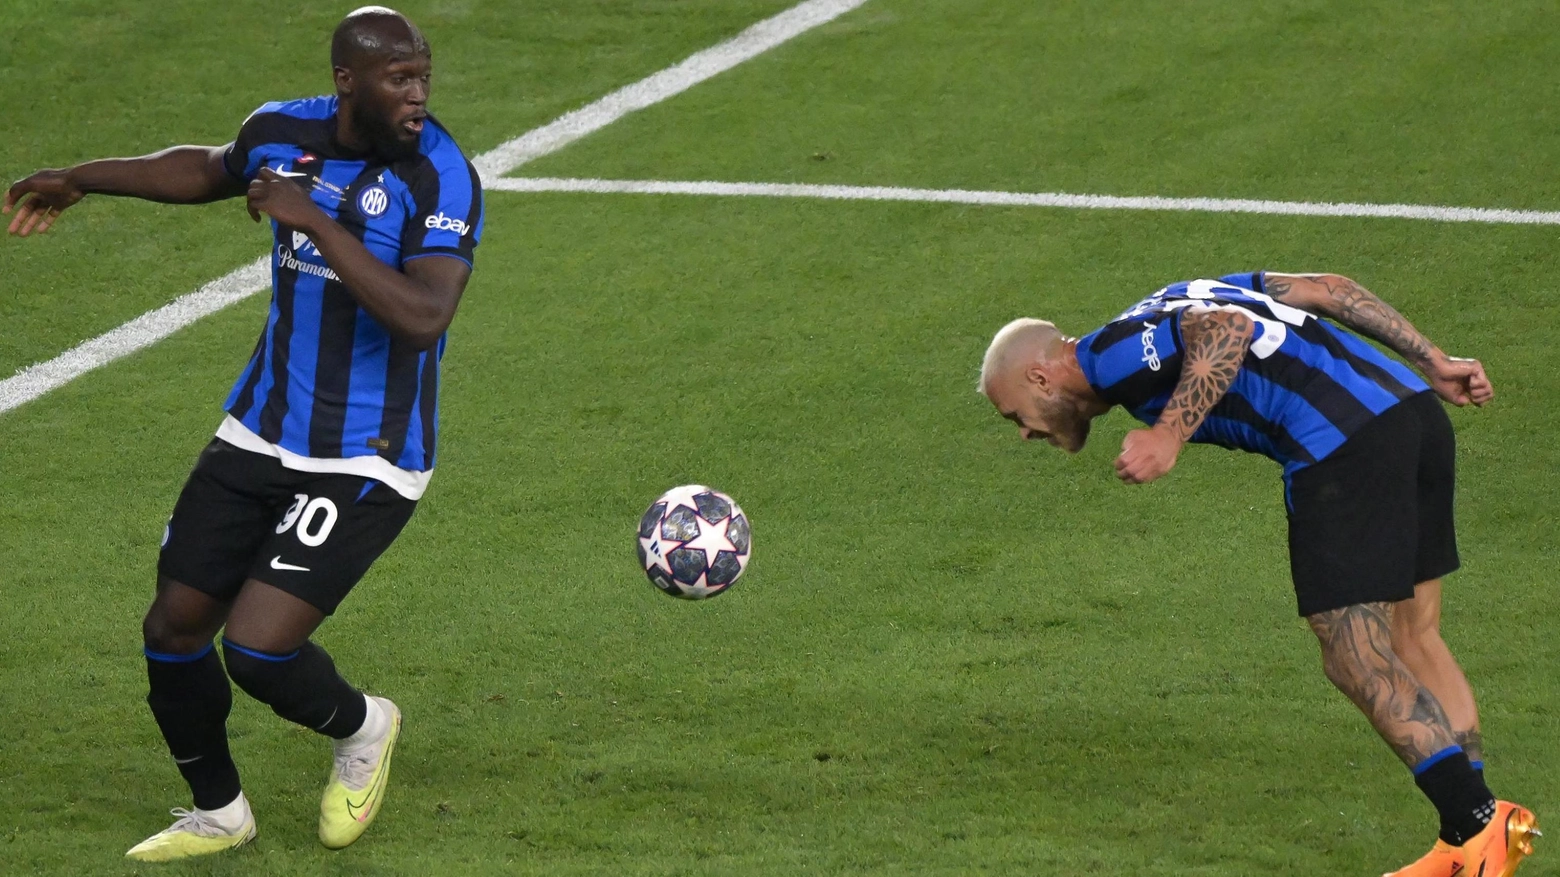 L’Inter riparte dal rinnovo di Inzaghi  Il dilemma è Lukaku: troppe finali sbagliate